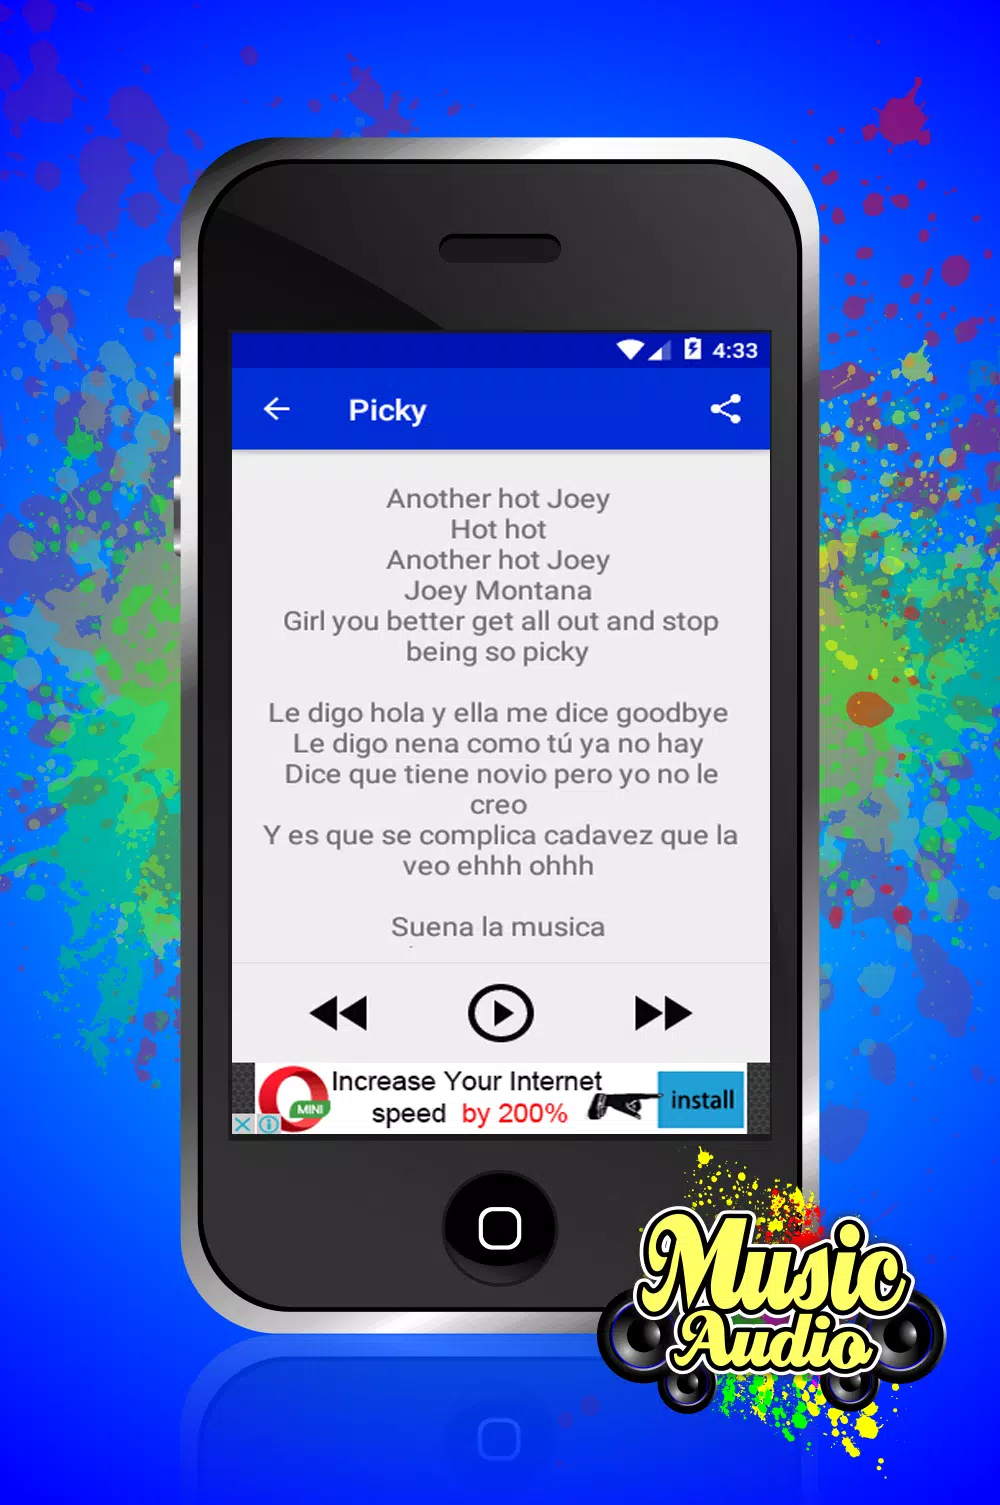 Descarga de APK de Hola Joey Montana Musica para Android